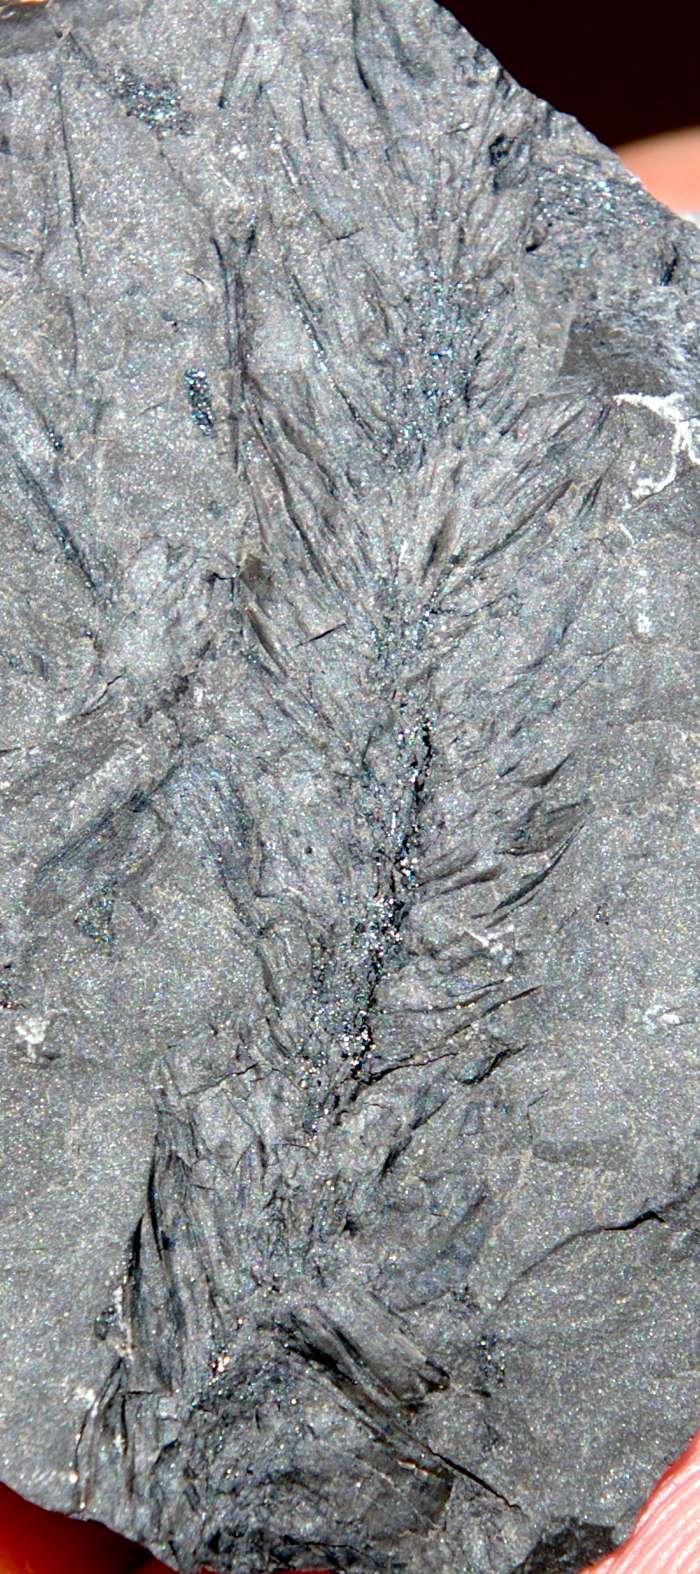 Bothrodendron minutifolium fossil